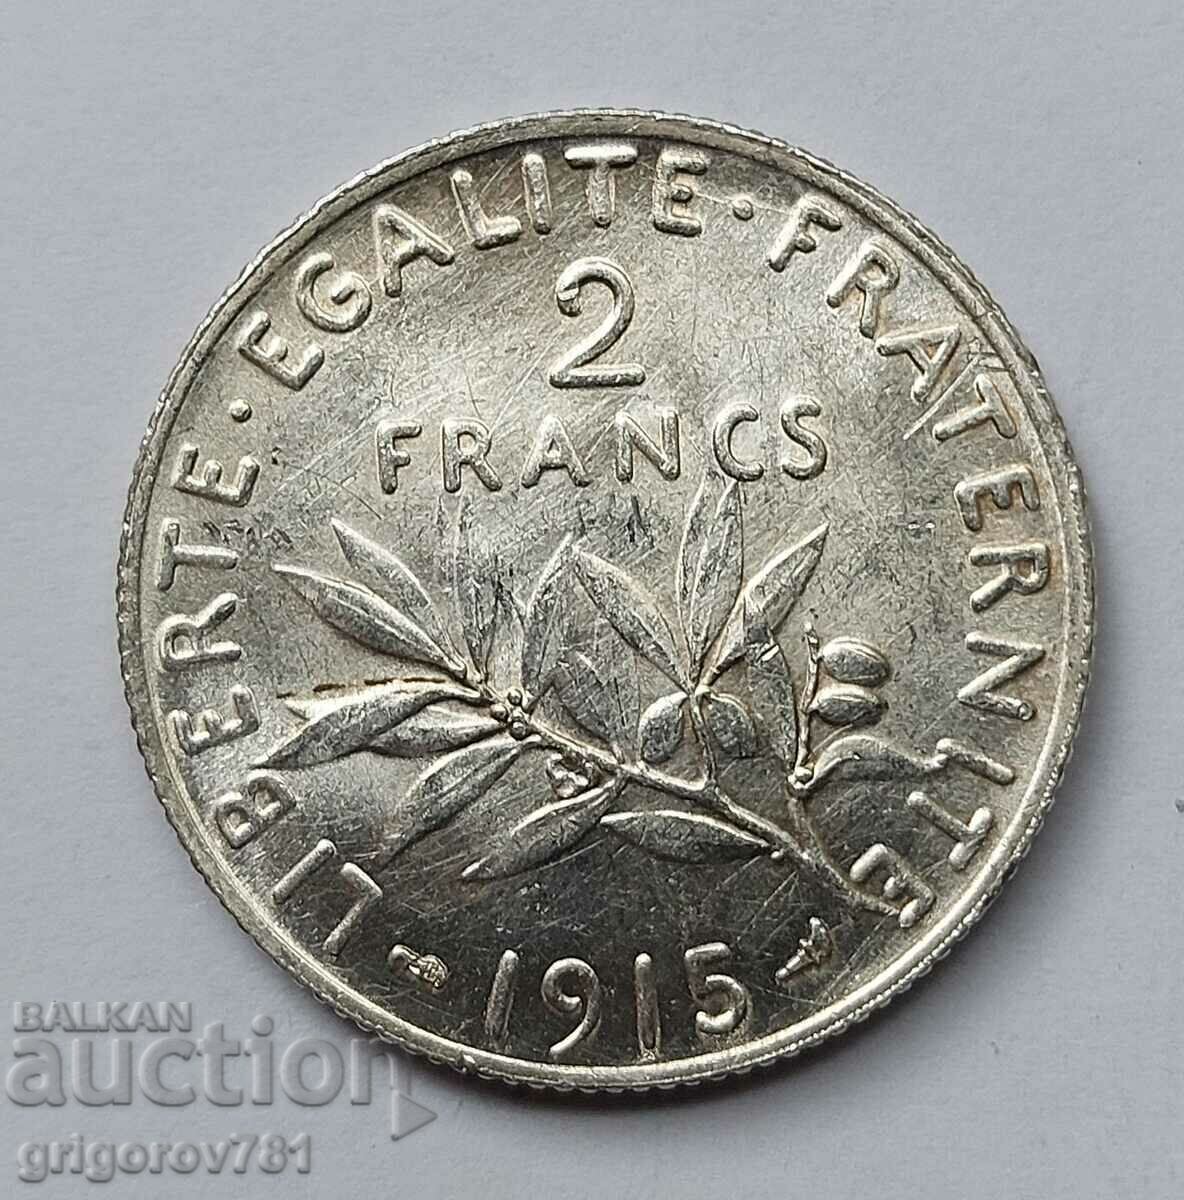 2 Franci Argint Franta 1915 - Moneda de argint #77